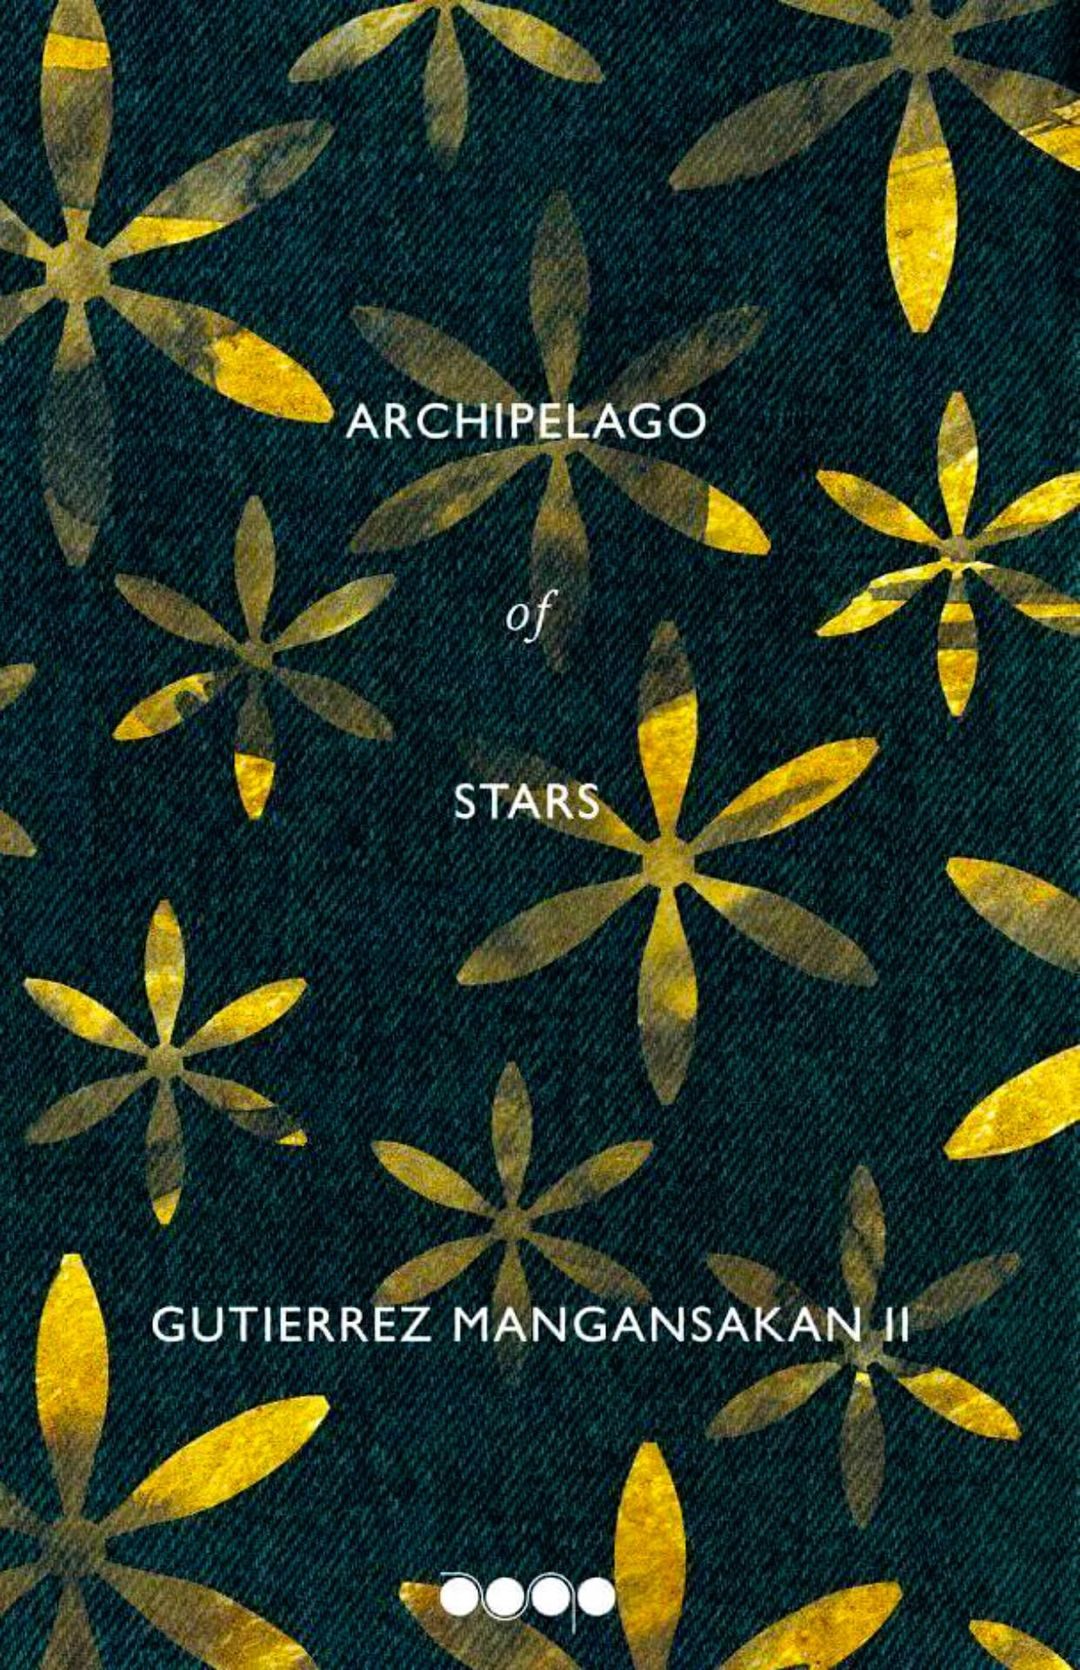 INTERVIEW: Weaving tales out of an archipelago of stars with essayist Teng Mangansakan